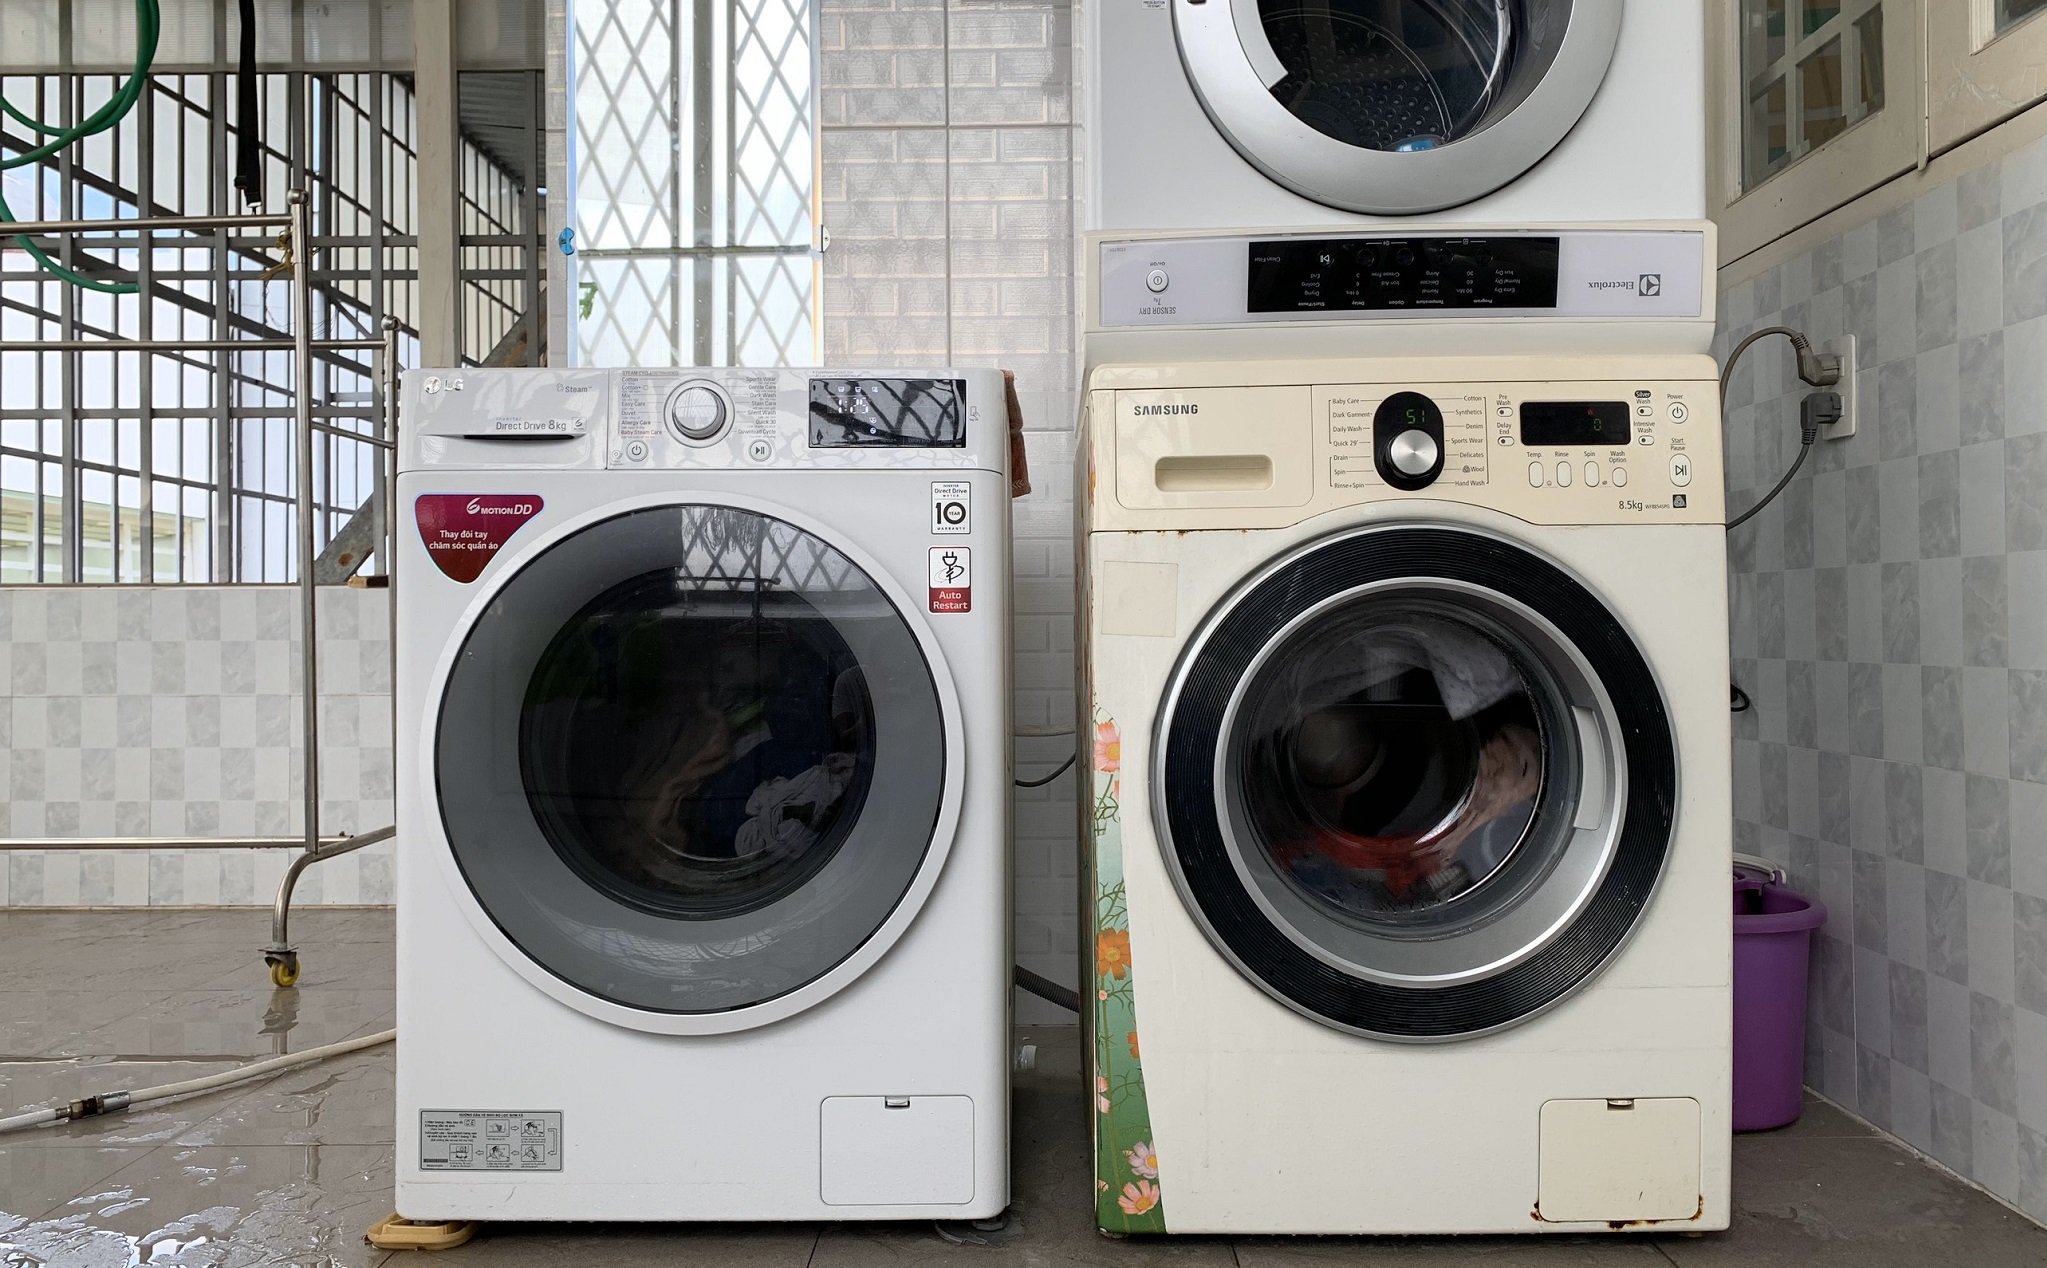 Chia sẻ kinh nghiệm về tính năng của máy giặt lồng ngang và sử dụng, bảo trì máy